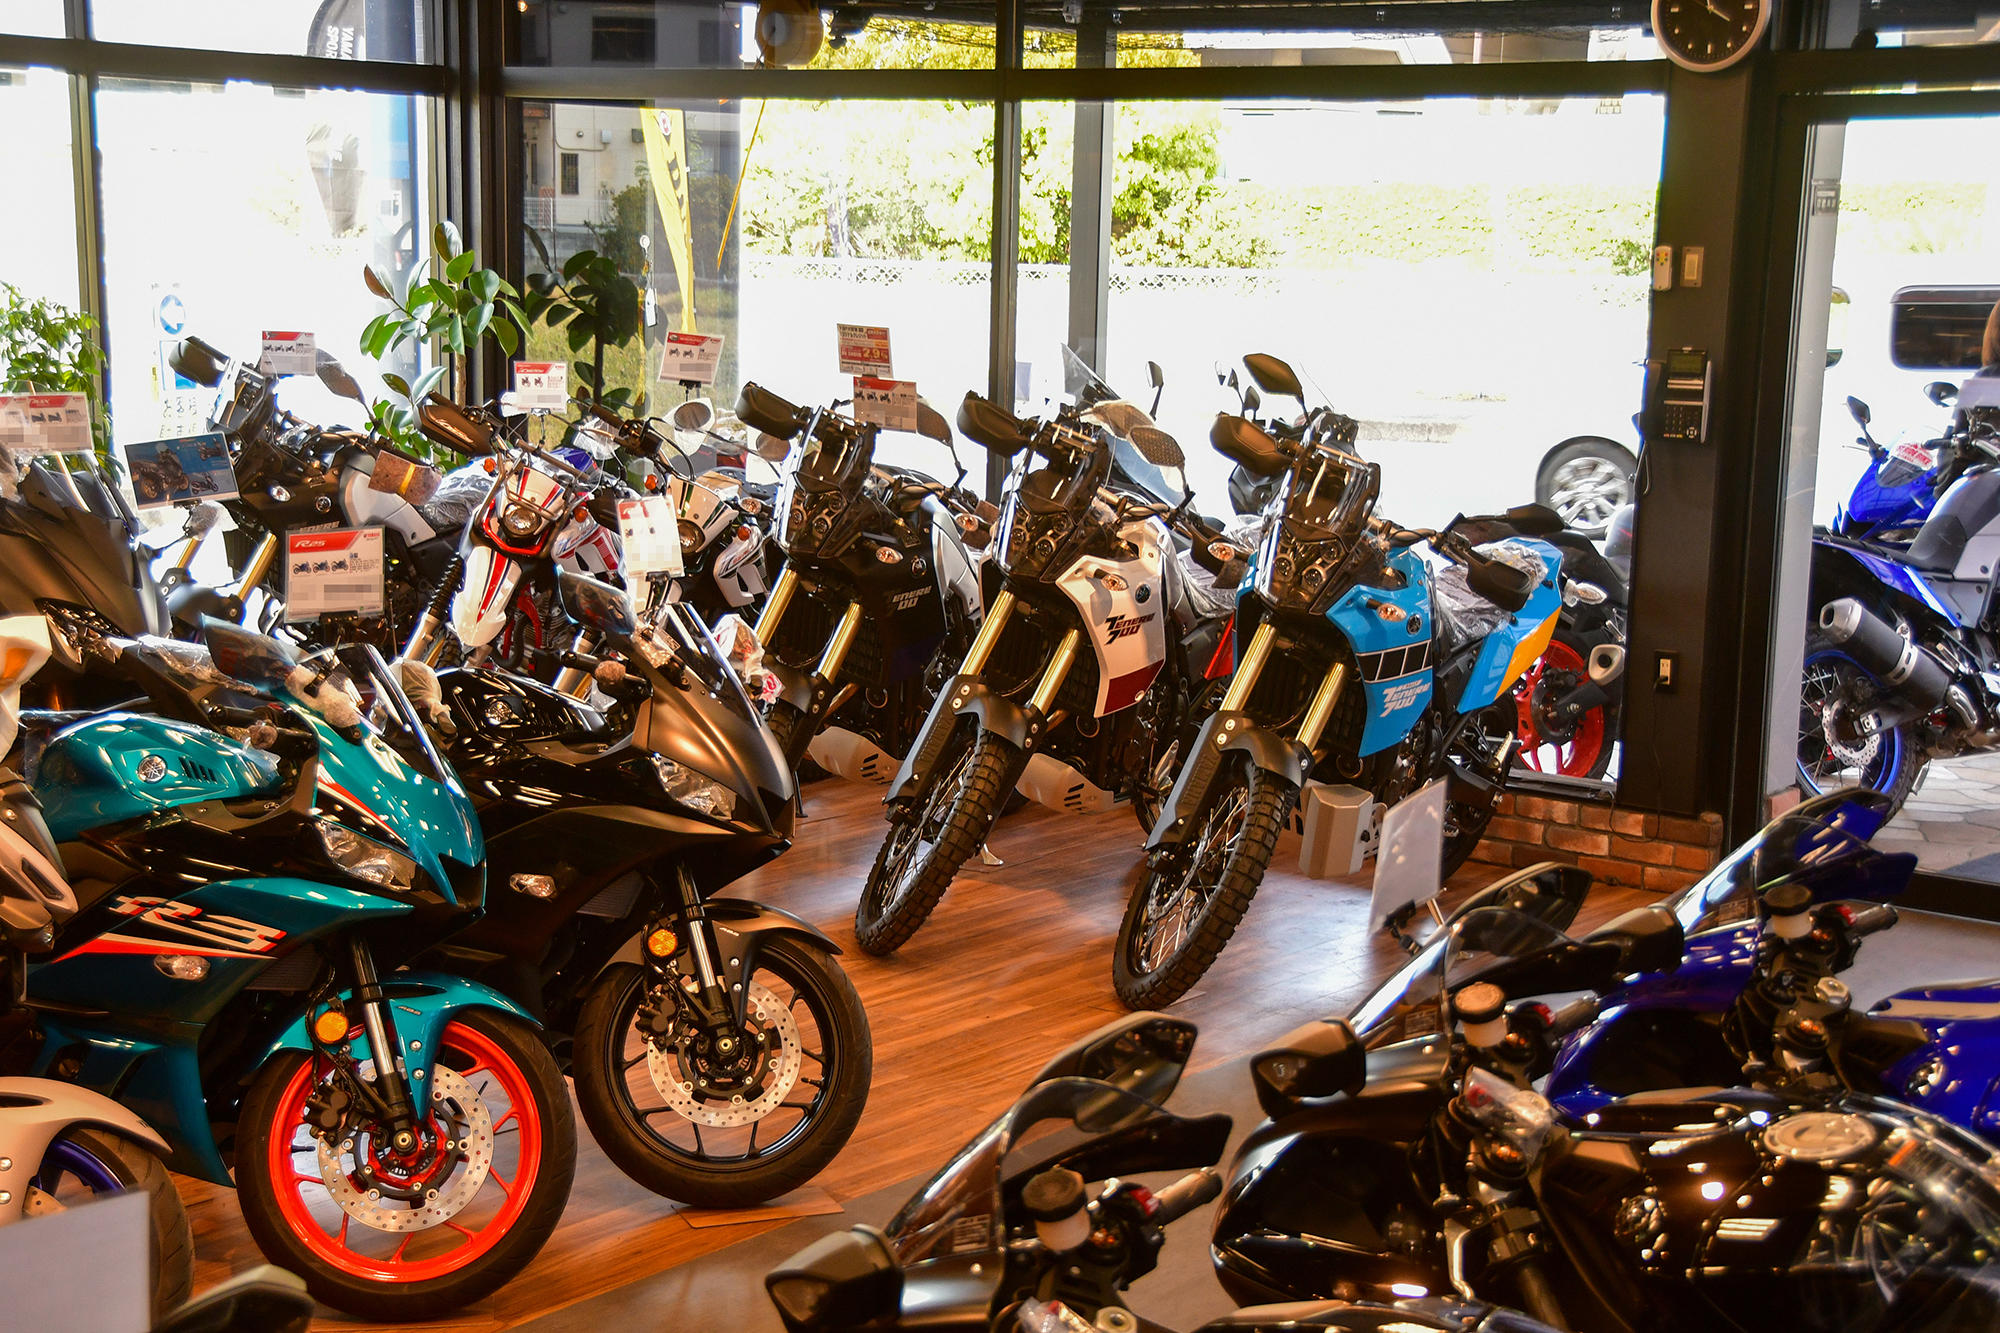 ヤマハスポーツバイクのラインナップをほぼ全て見ることができる充実したショールームです。